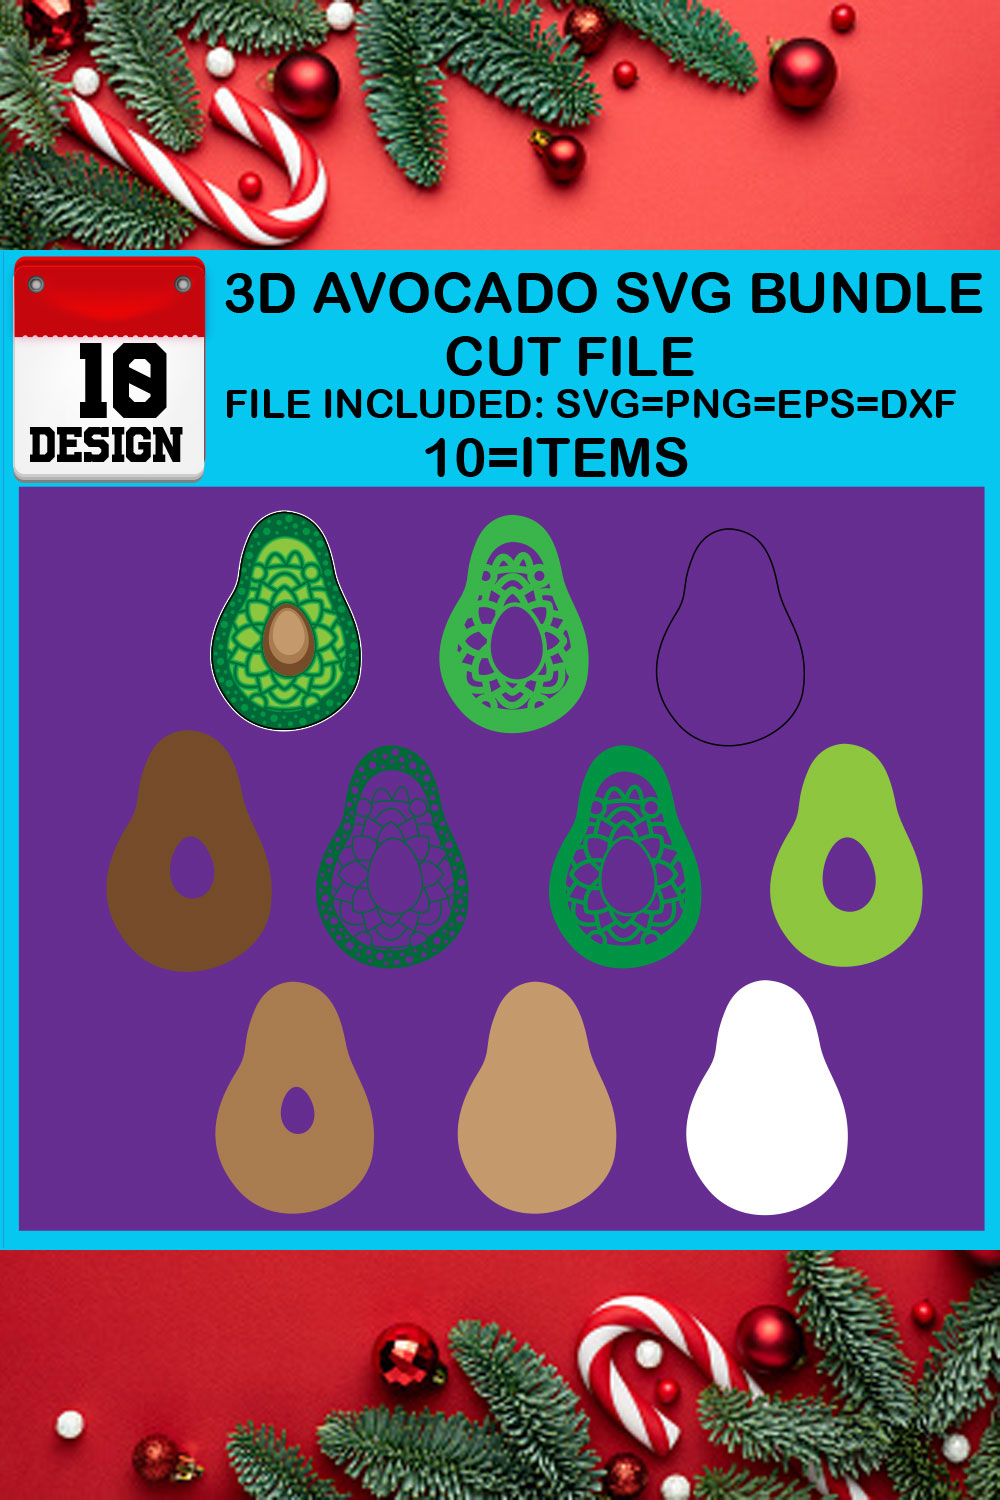 3D Avocado SVG Bundle Cut File pinterest preview image.